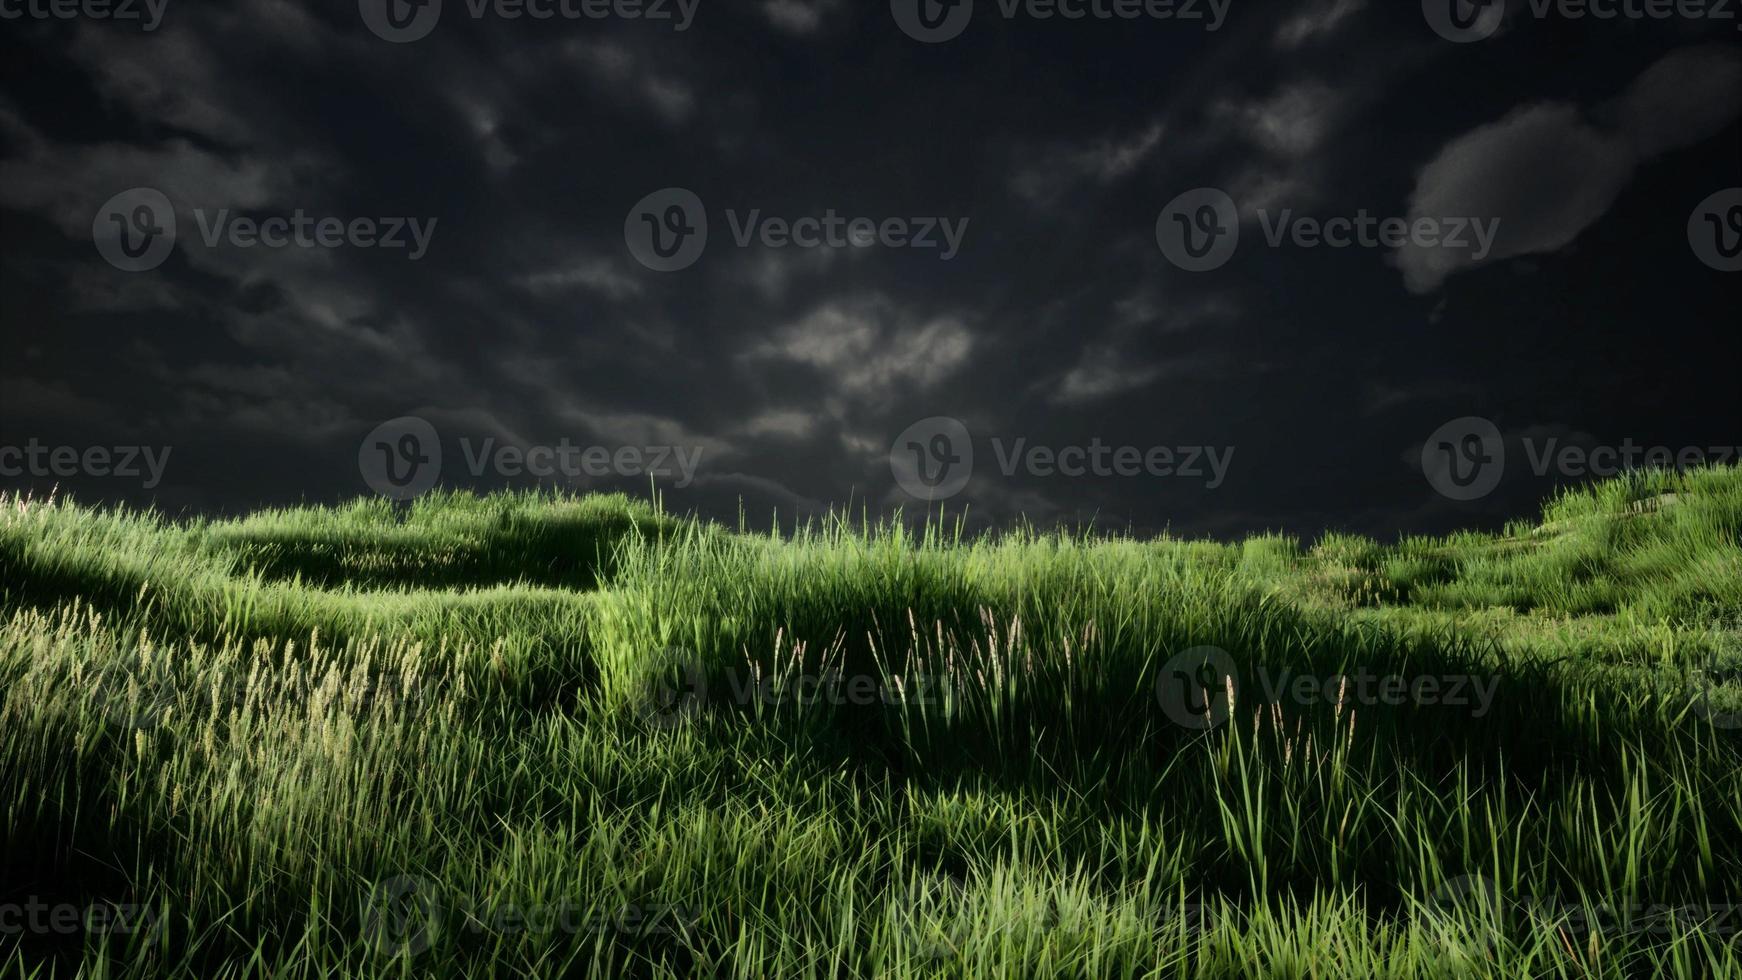 Nuages d'orage au-dessus de prairie avec de l'herbe verte photo